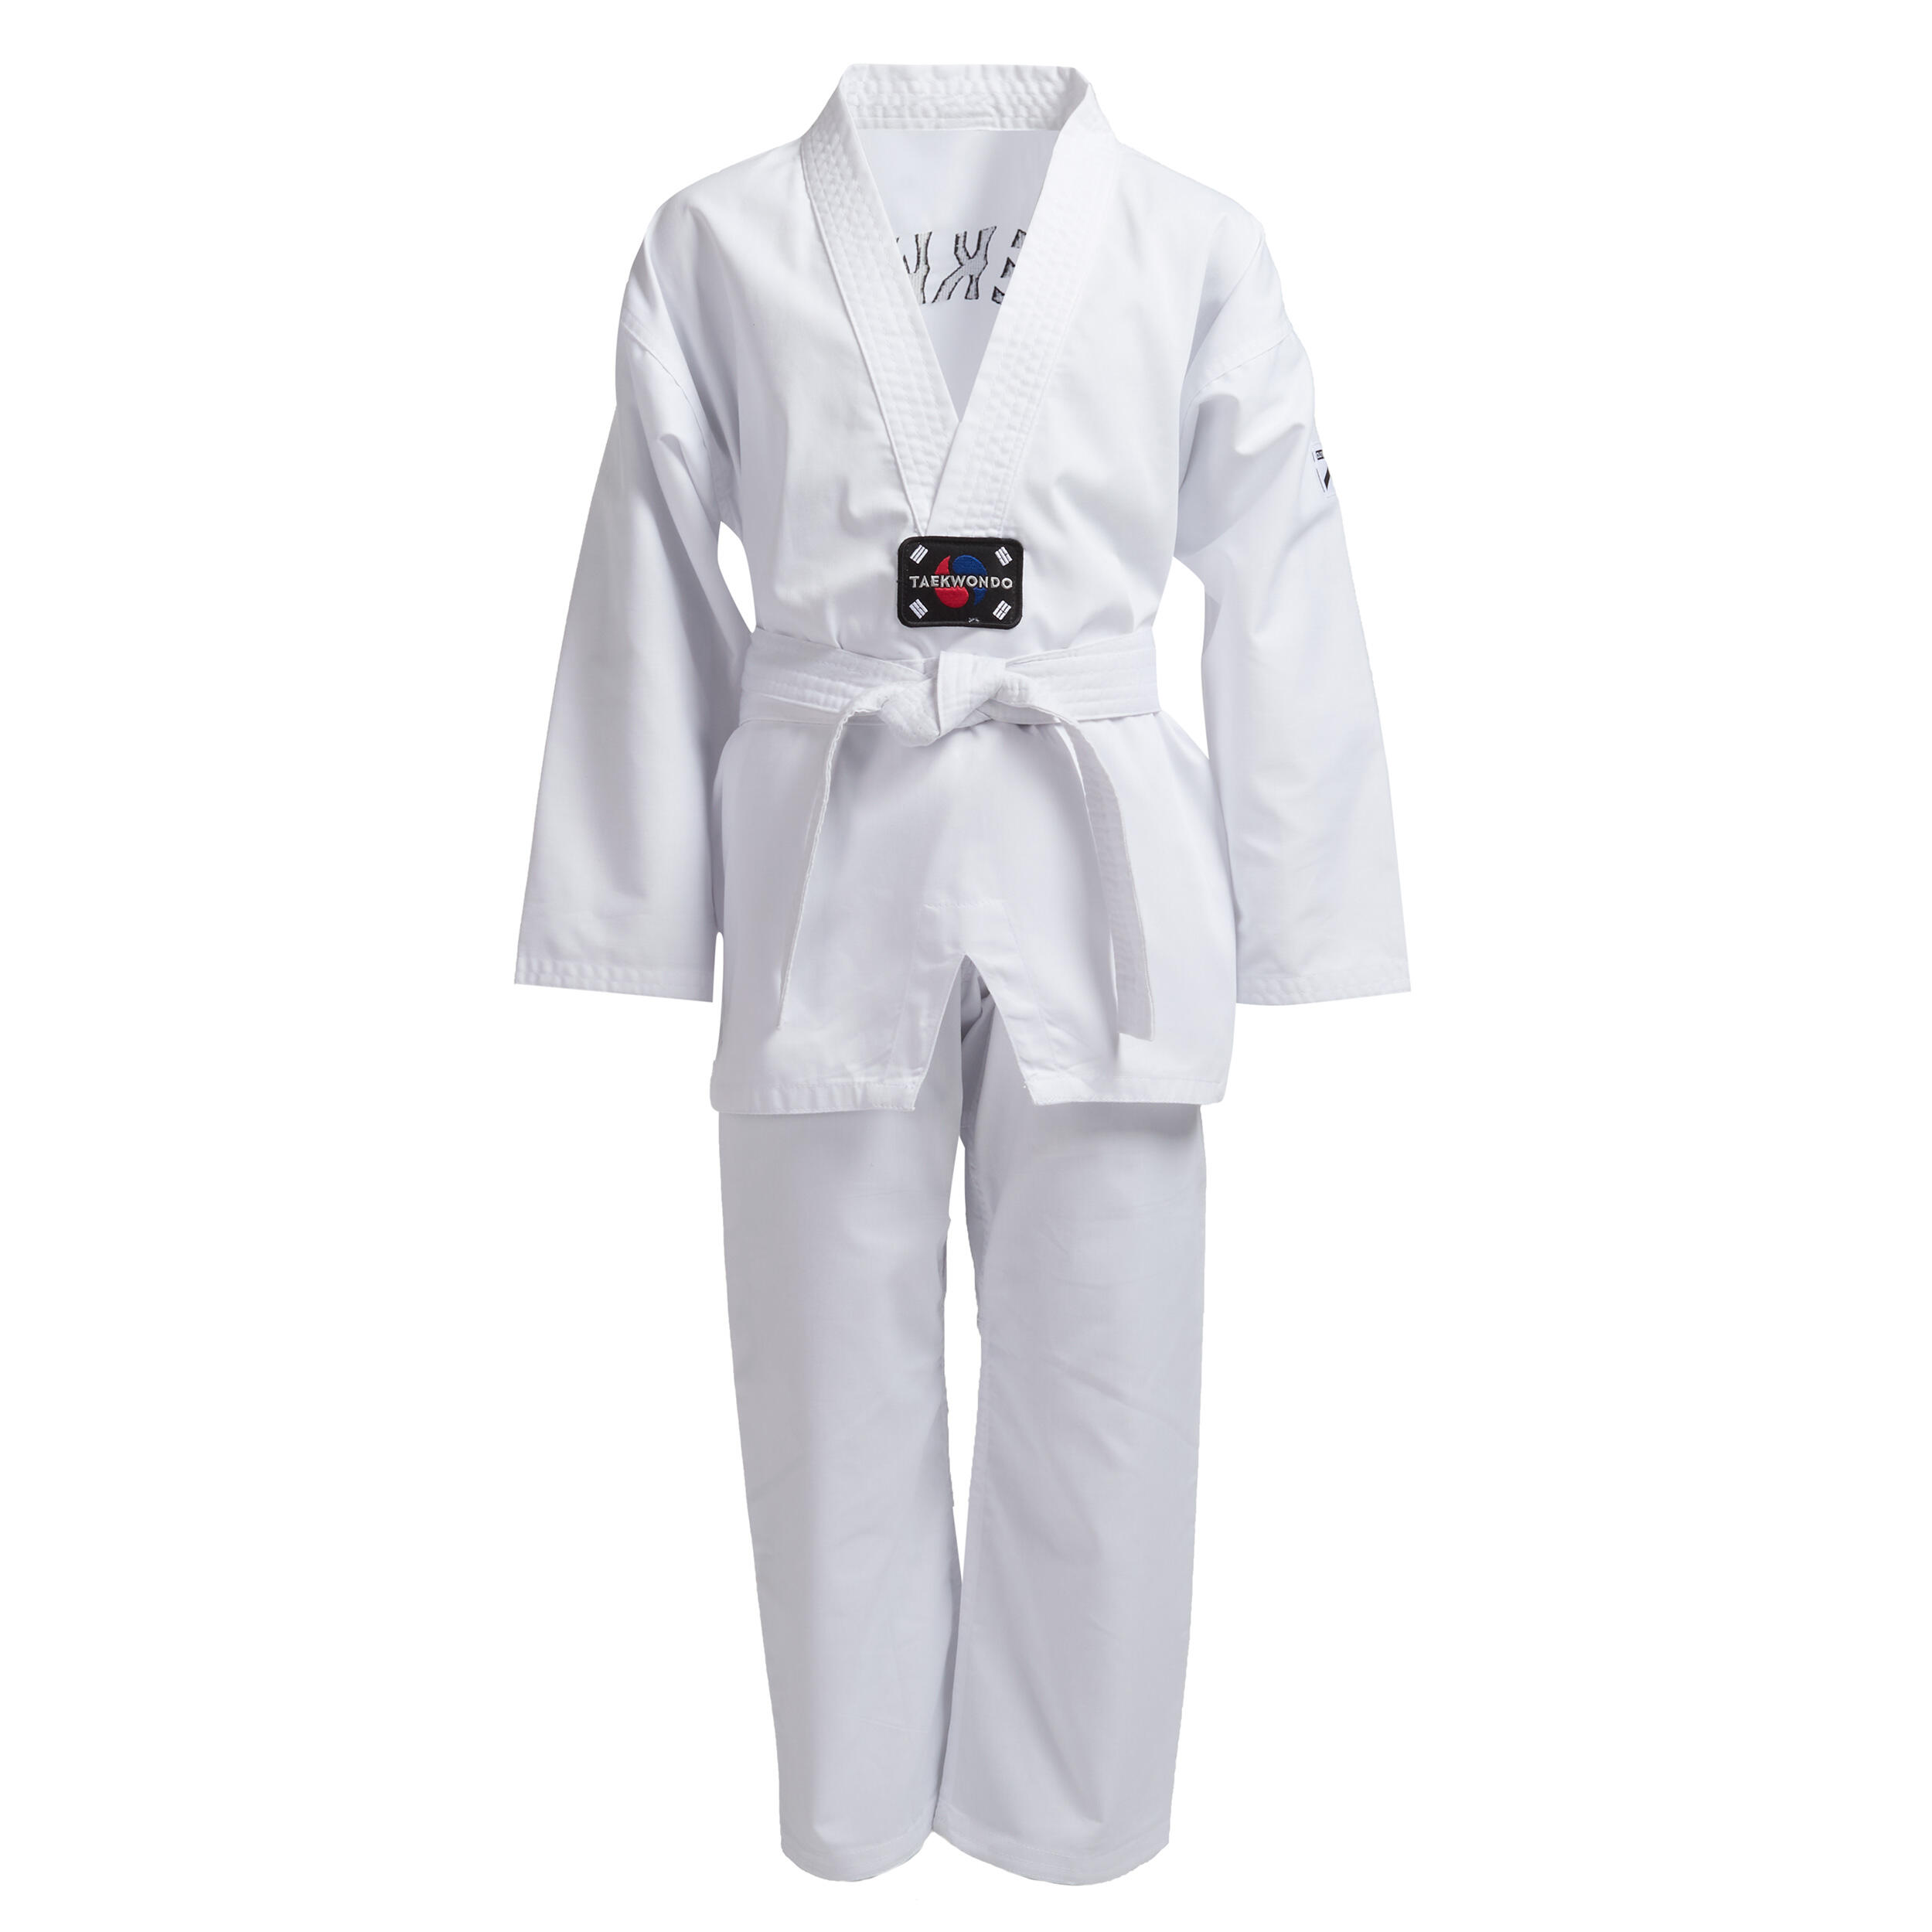 Dobok/Kimono 100 Taekwondo Alb Copii La Oferta Online decathlon imagine La Oferta Online